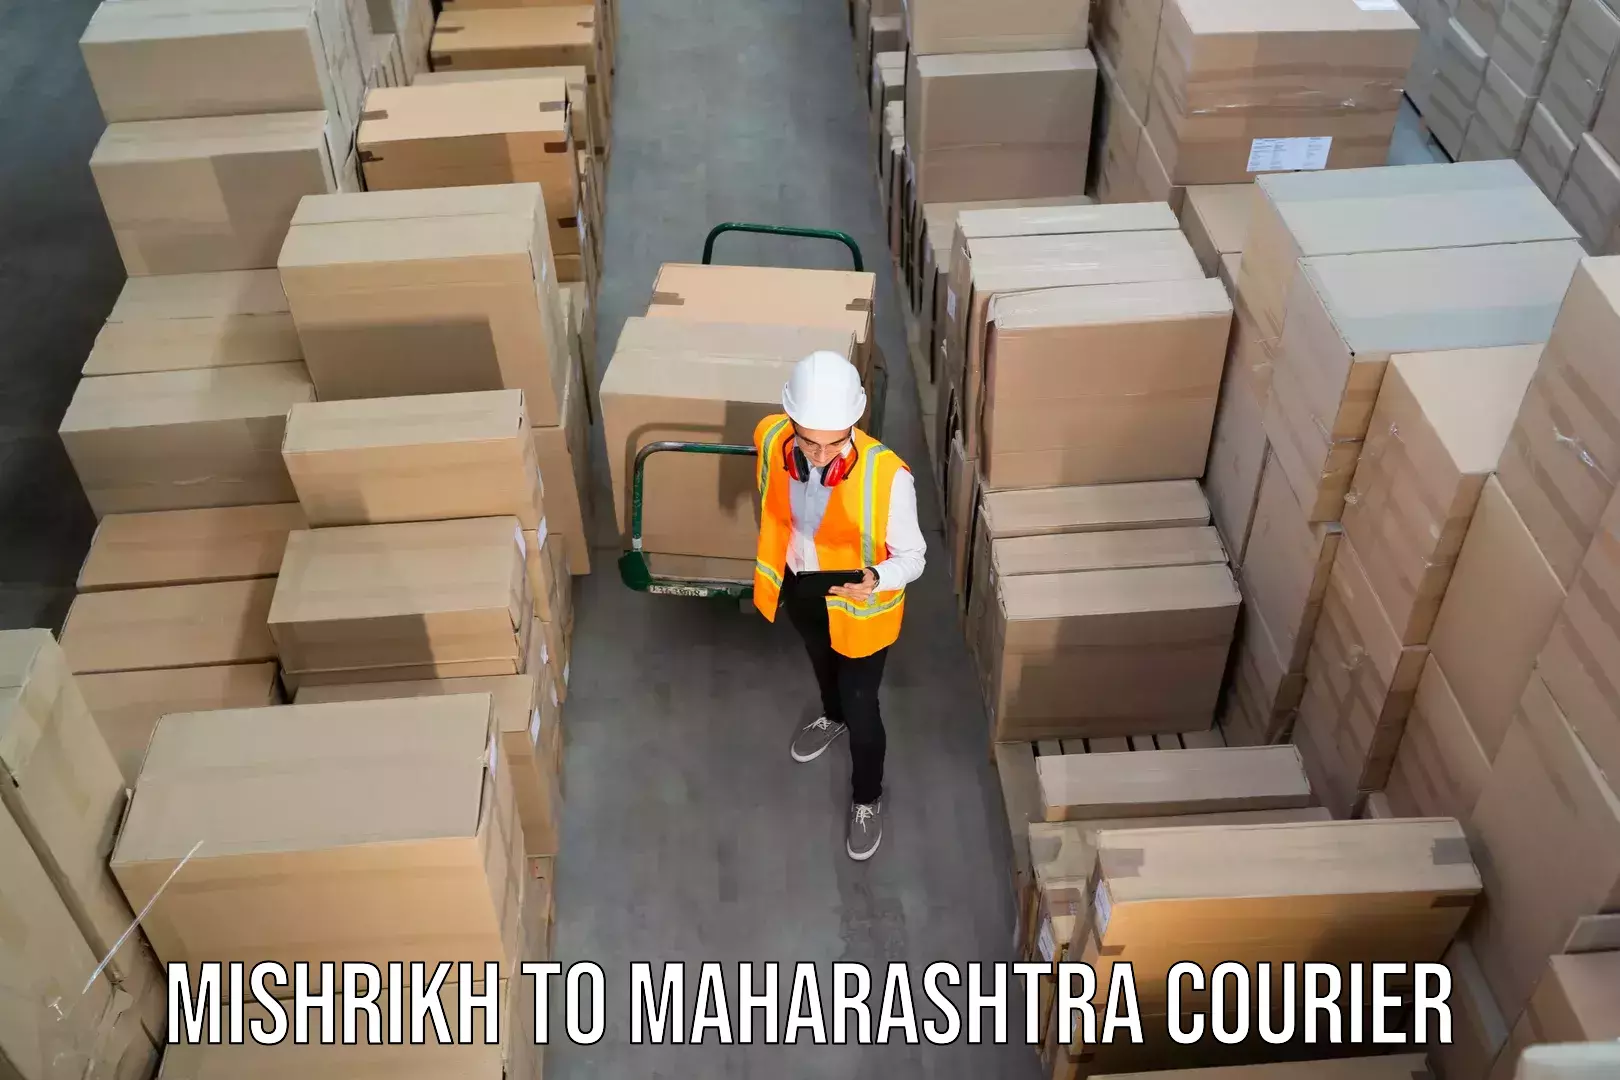 Trackable shipping service Mishrikh to Maharashtra